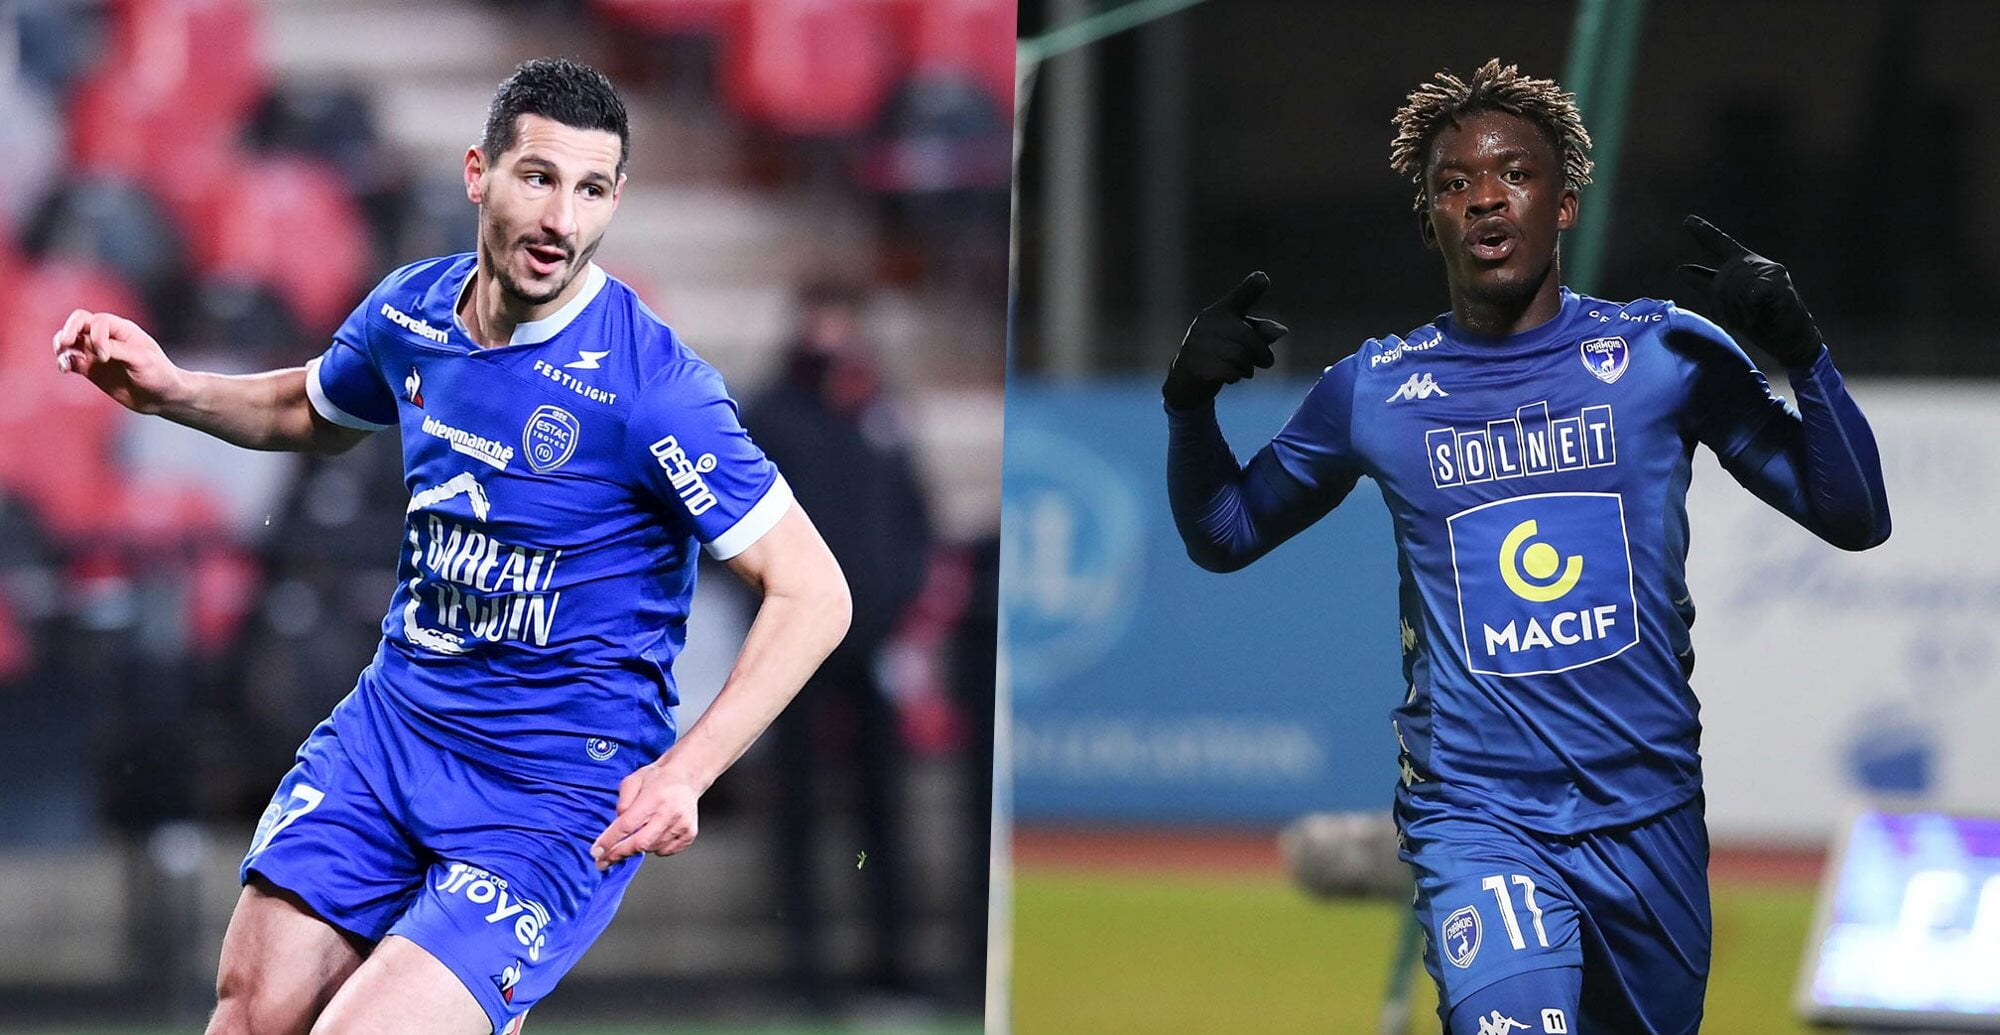 Touzghar (Troyes) et Ba (Niort) collectionnent les buts ces dernières semaines.